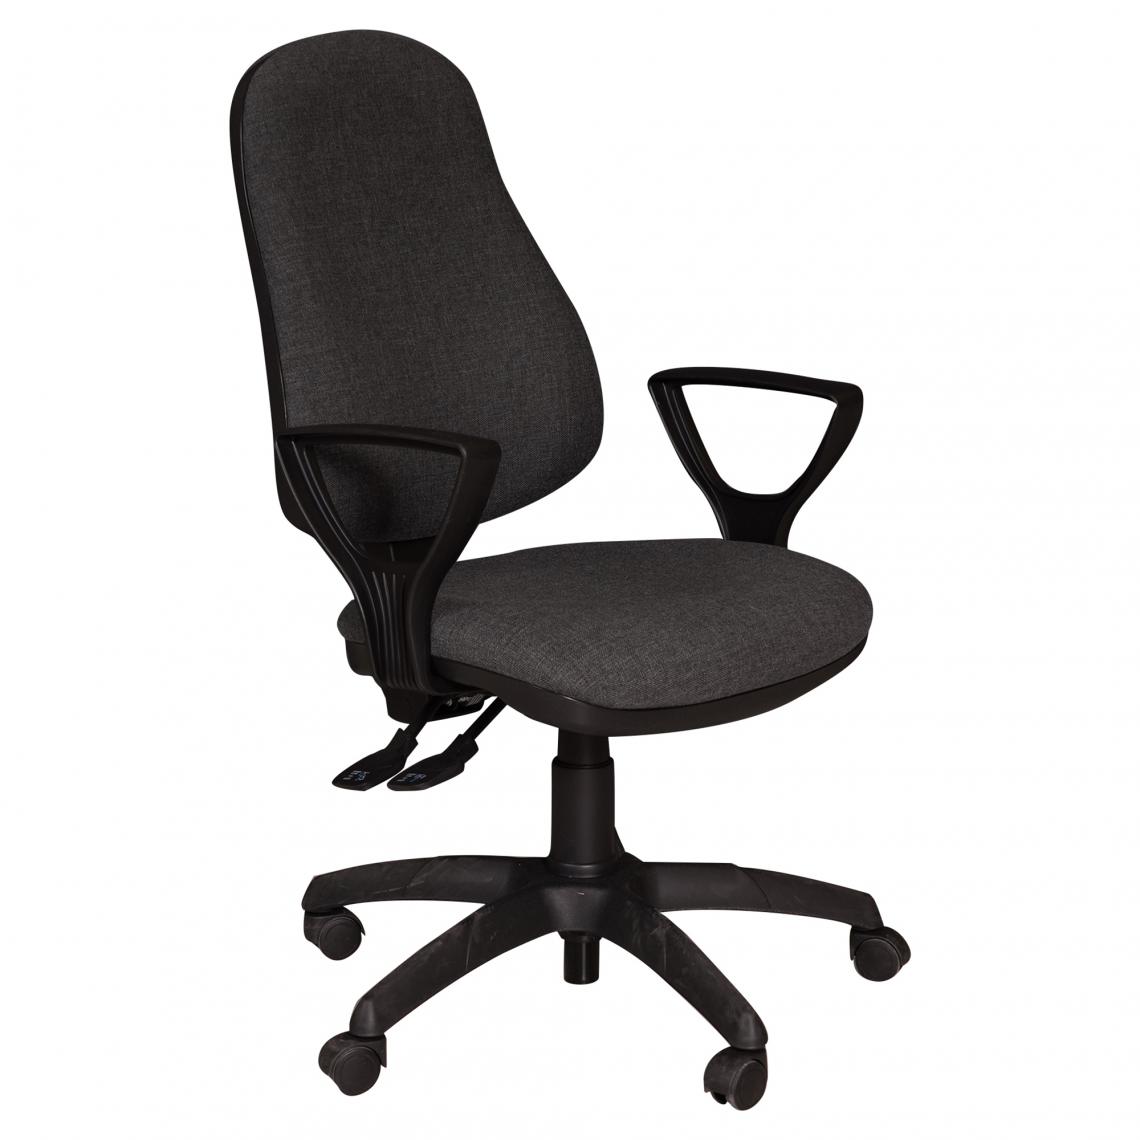 Alter - Chaise de bureau à roulettes, Chaise relevable, Chaise rembourrée en tissu, 57x61h109 / 123 cm, Couleur gris - Chaises